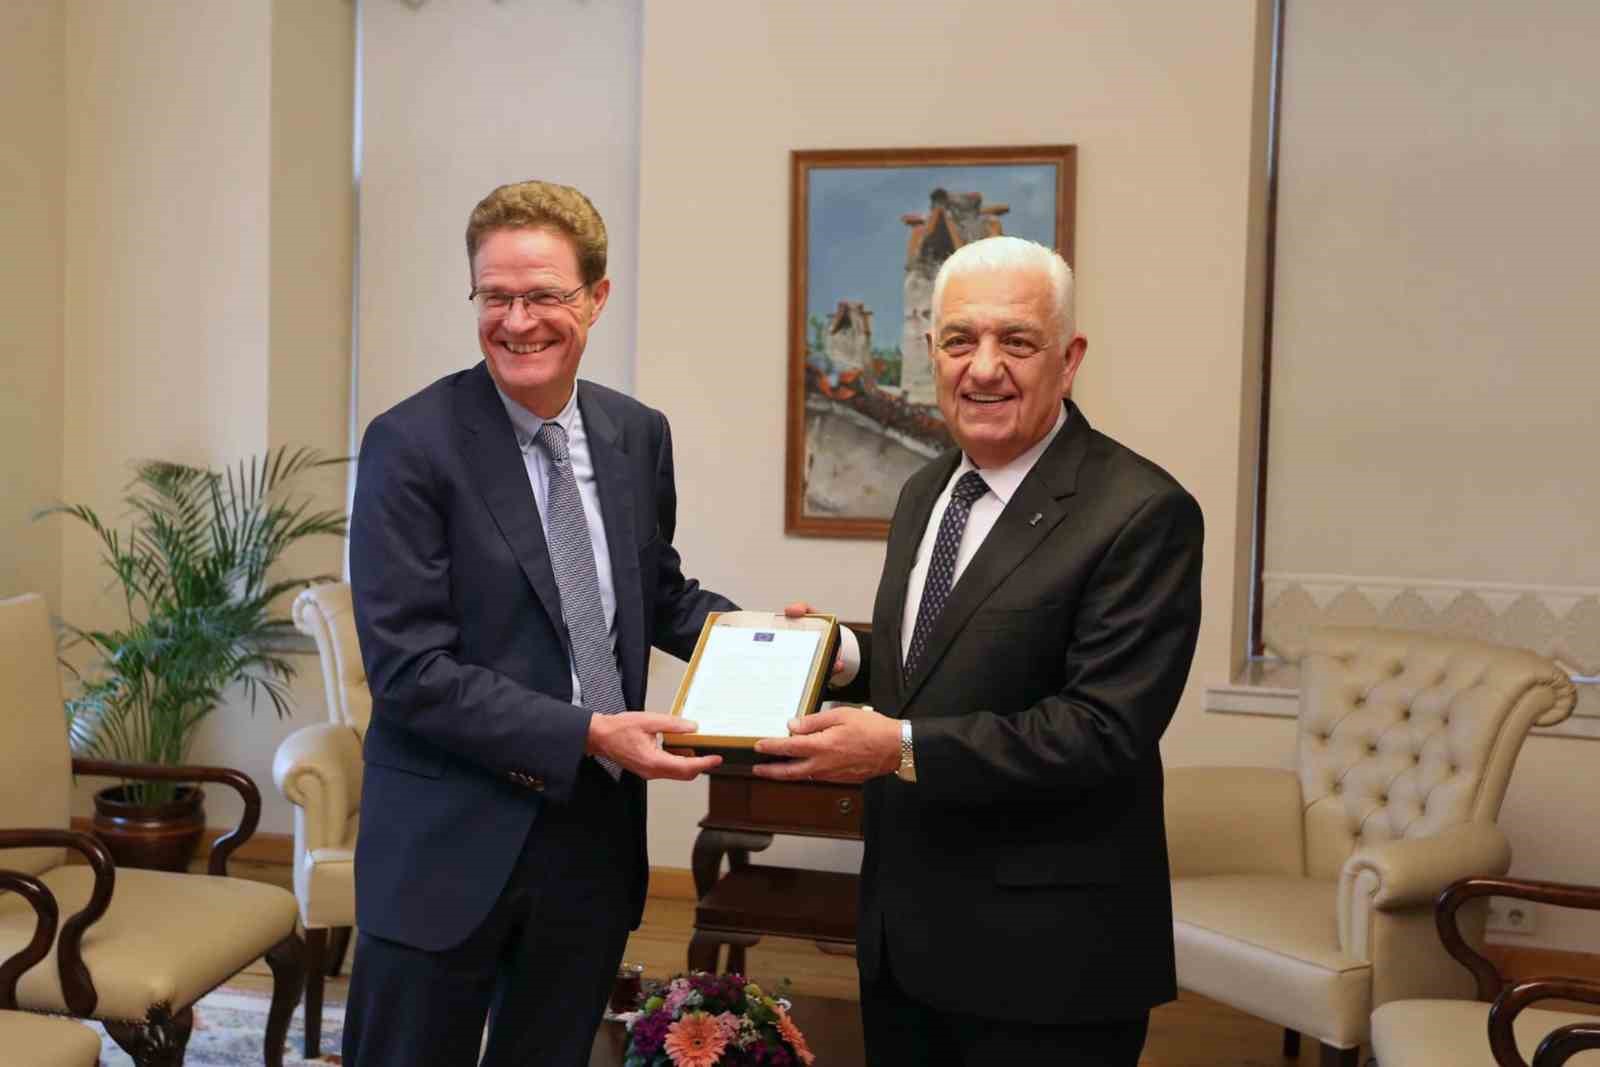 AB Türkiye Delegasyonu Başkanı’ndan Başkan Gürün’e ziyaret